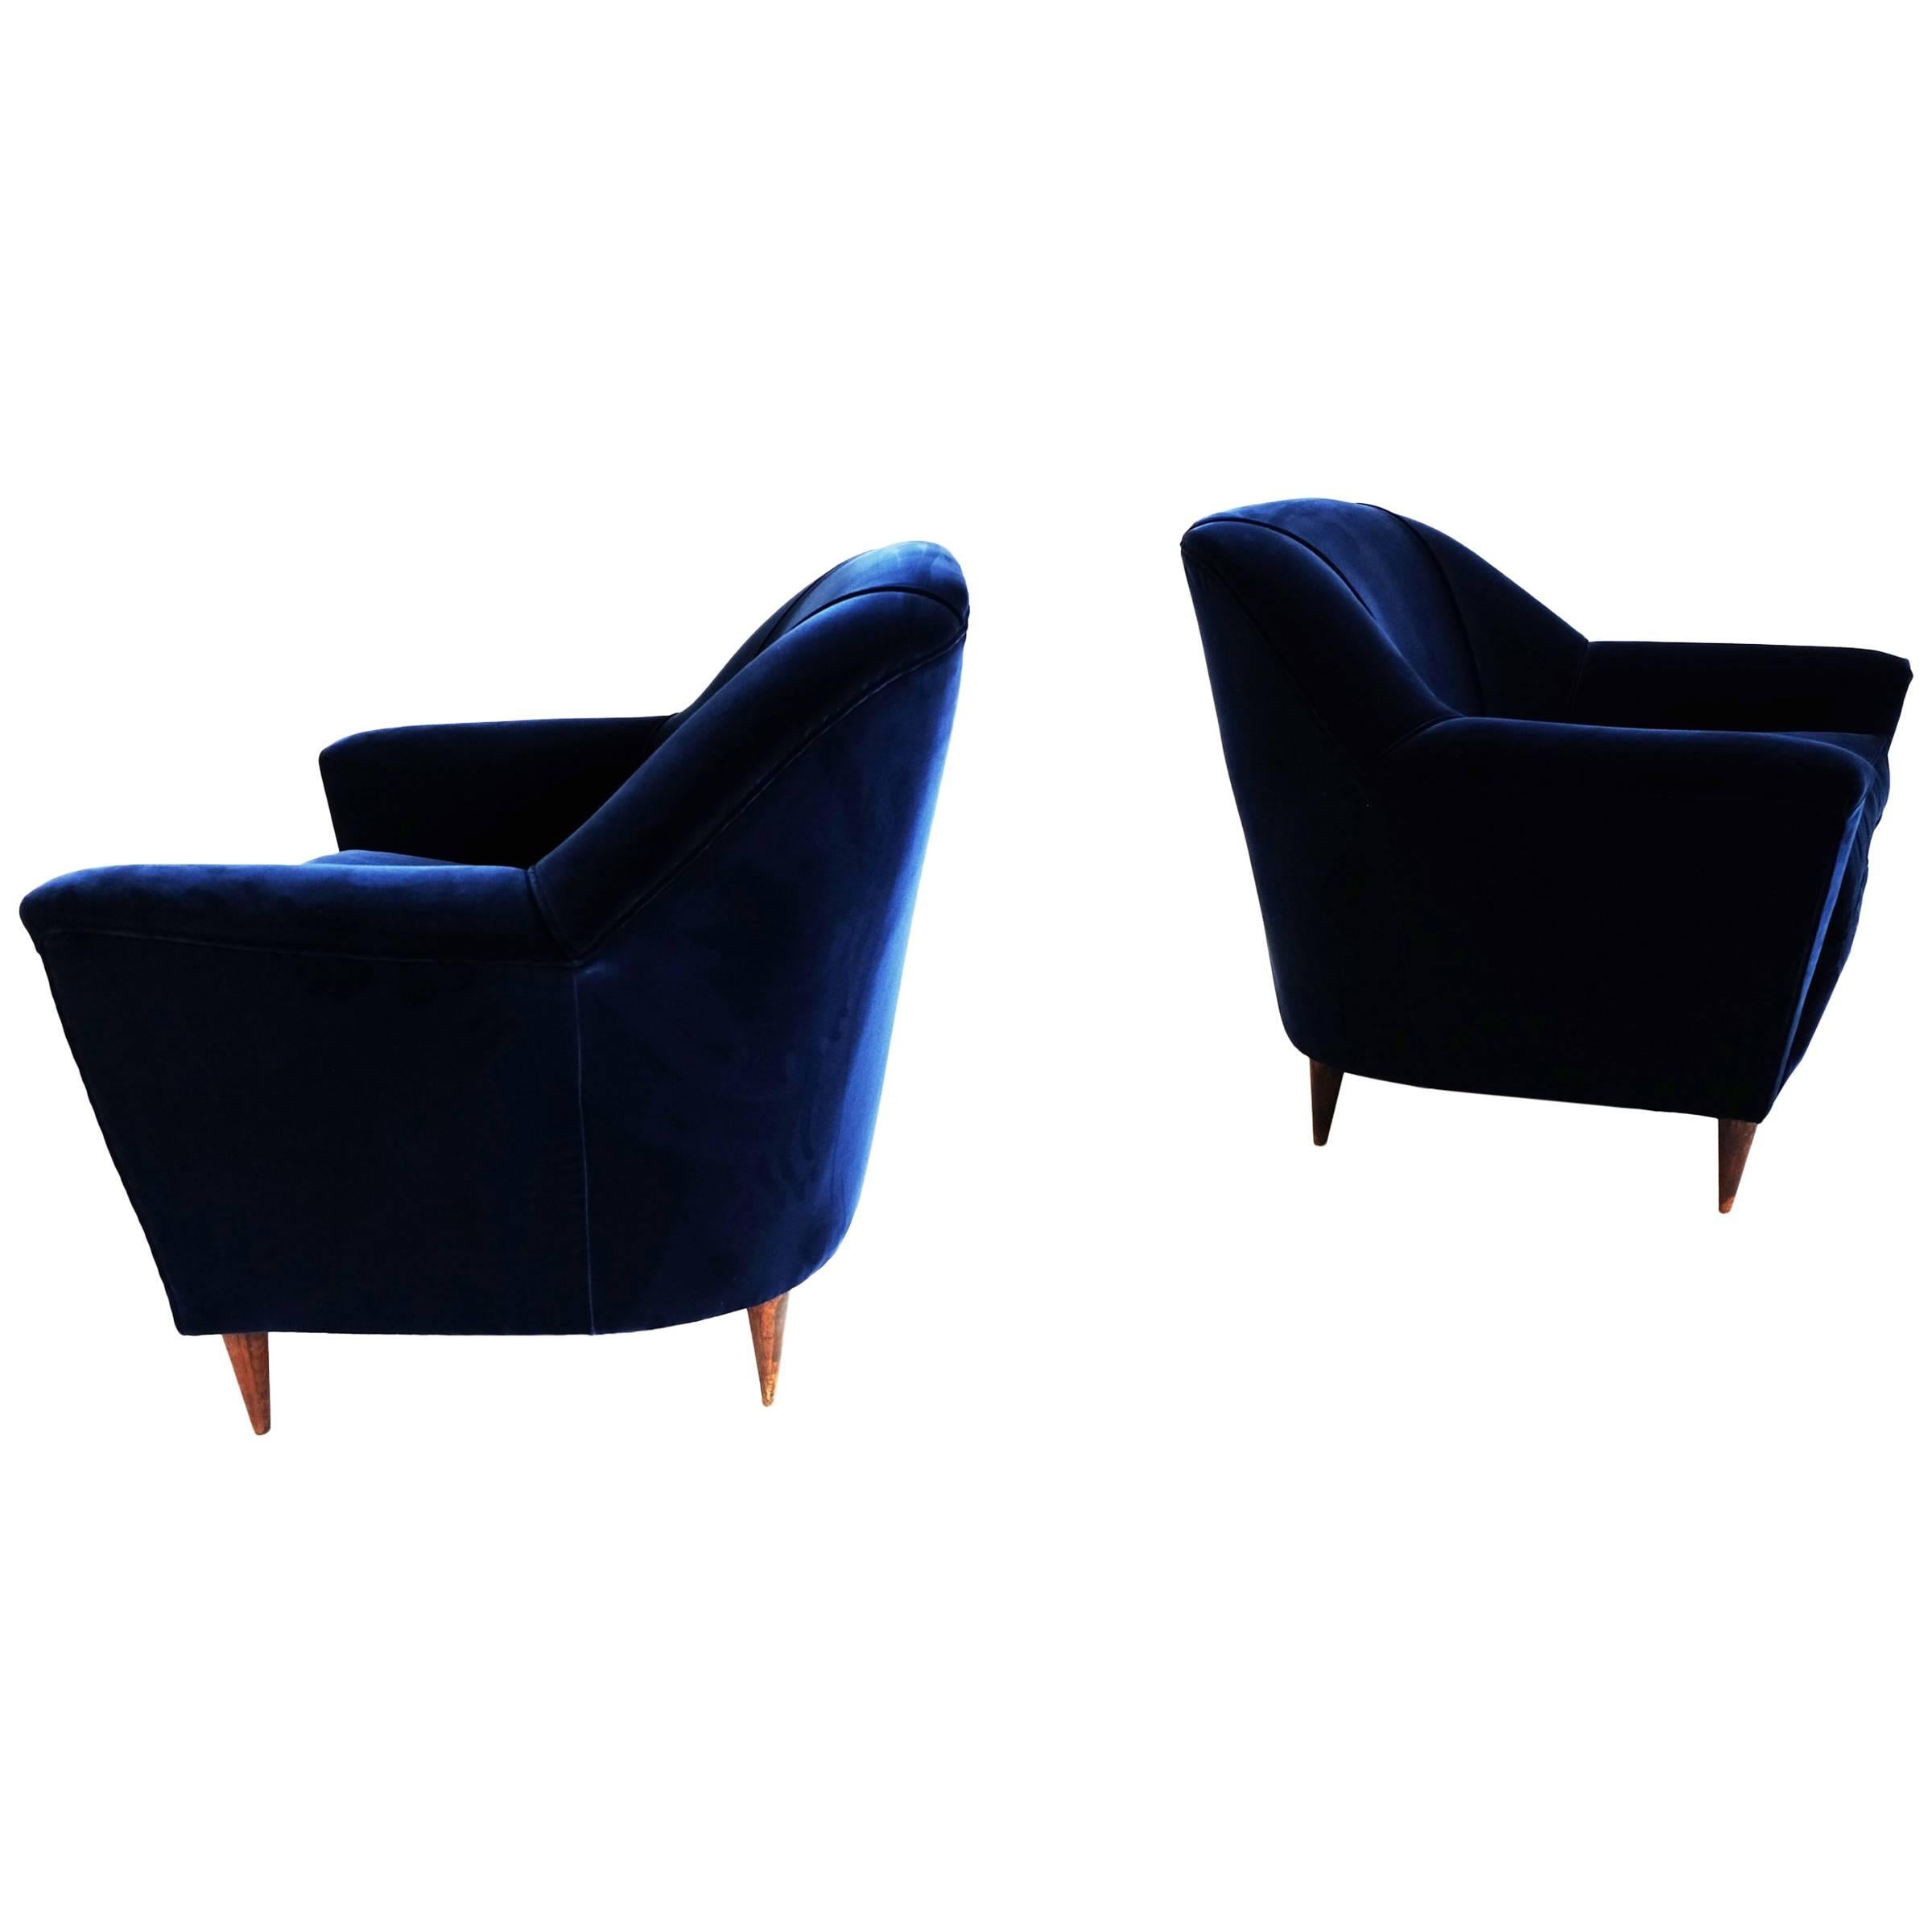 Ico Parisi, Rare Pair of Deep Blue Velvet Armchairs, circa 1950